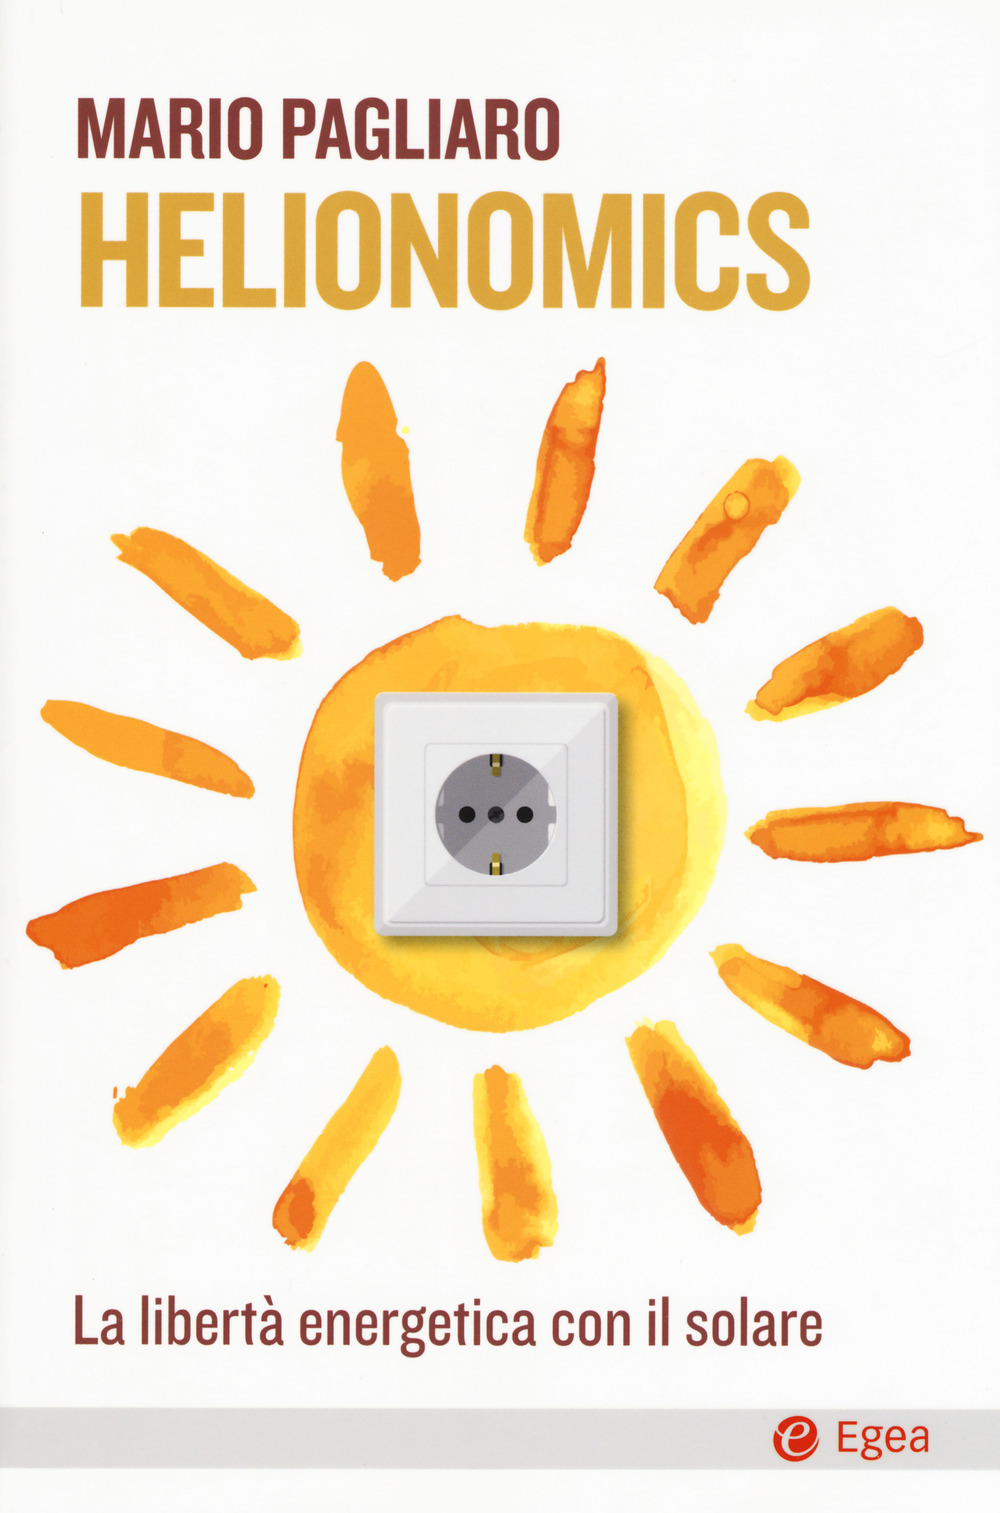 Copertina di Helionomics (Egea, 2018), il libro di Mario Pagliaro sull'economia solare